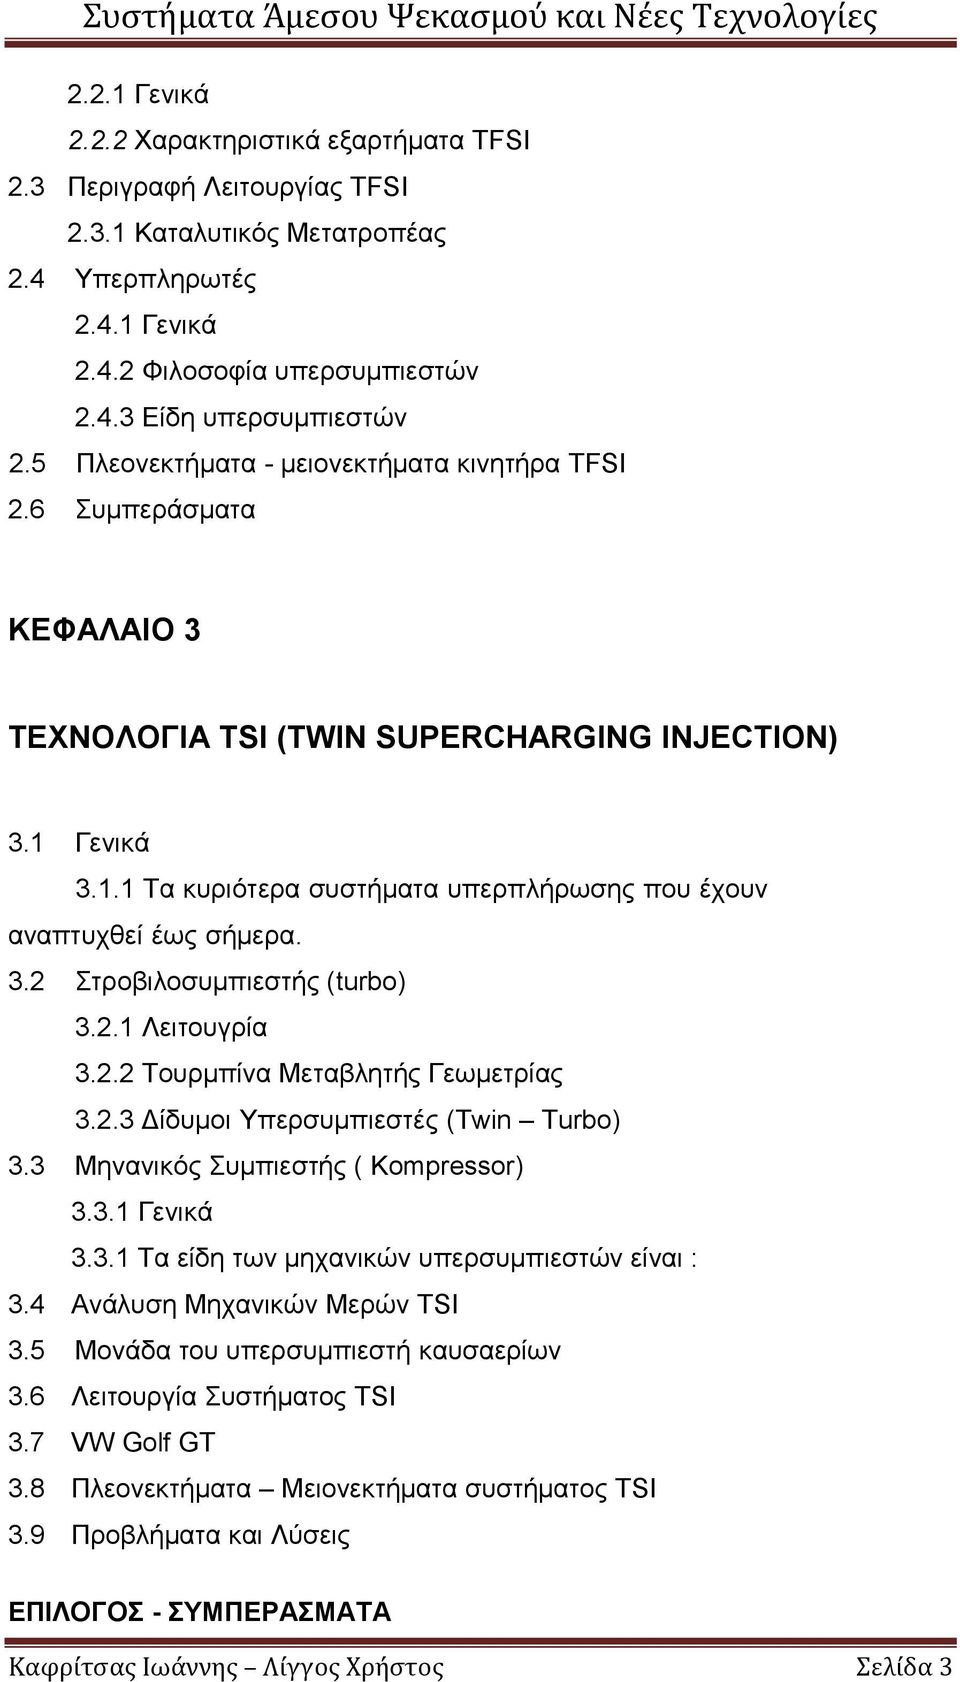 3.2 Στροβιλοσυμπιεστής (turbo) 3.2.1 Λειτουγρία 3.2.2 Τουρμπίνα Μεταβλητής Γεωμετρίας 3.2.3 Δίδυμοι Υπερσυμπιεστές (Twin Turbo) 3.3 Μηνανικός Συμπιεστής ( Kompressor) 3.3.1 Γενικά 3.3.1 Τα είδη των μηχανικών υπερσυμπιεστών είναι : 3.